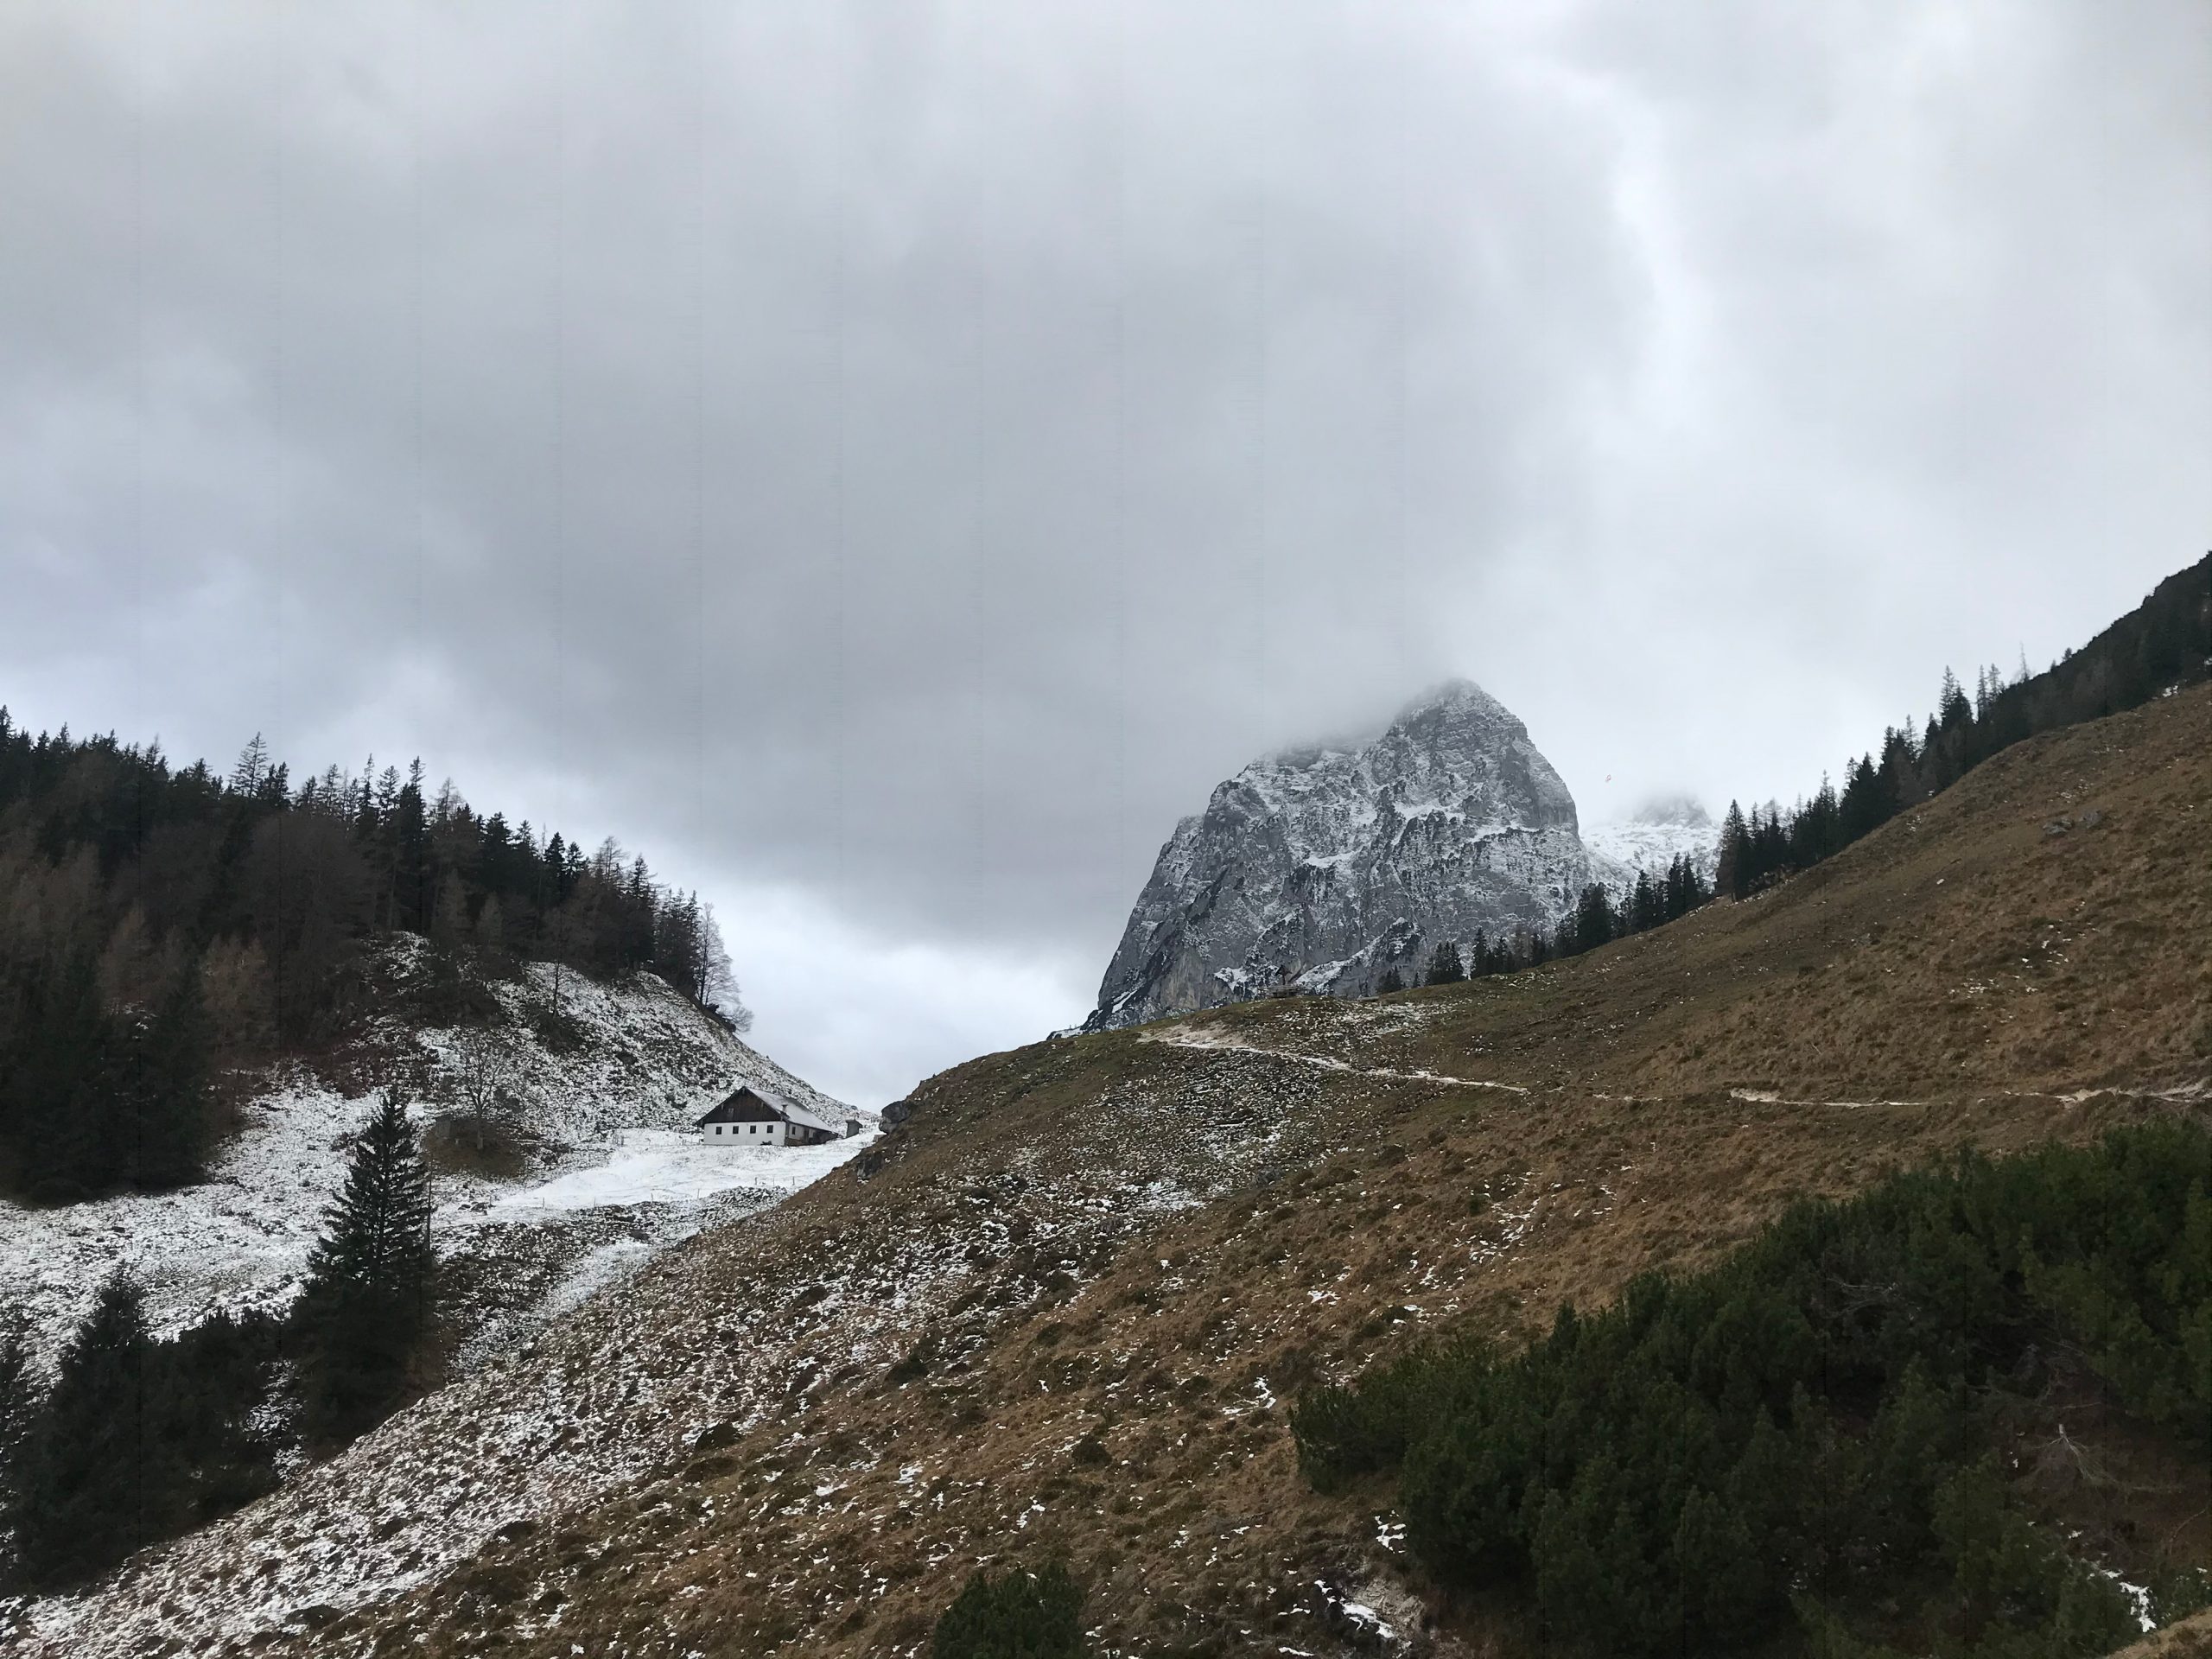 Naturaufnahme eines Wanderweges bei bewölktem Himmel und mit schneebedeckten Hängen